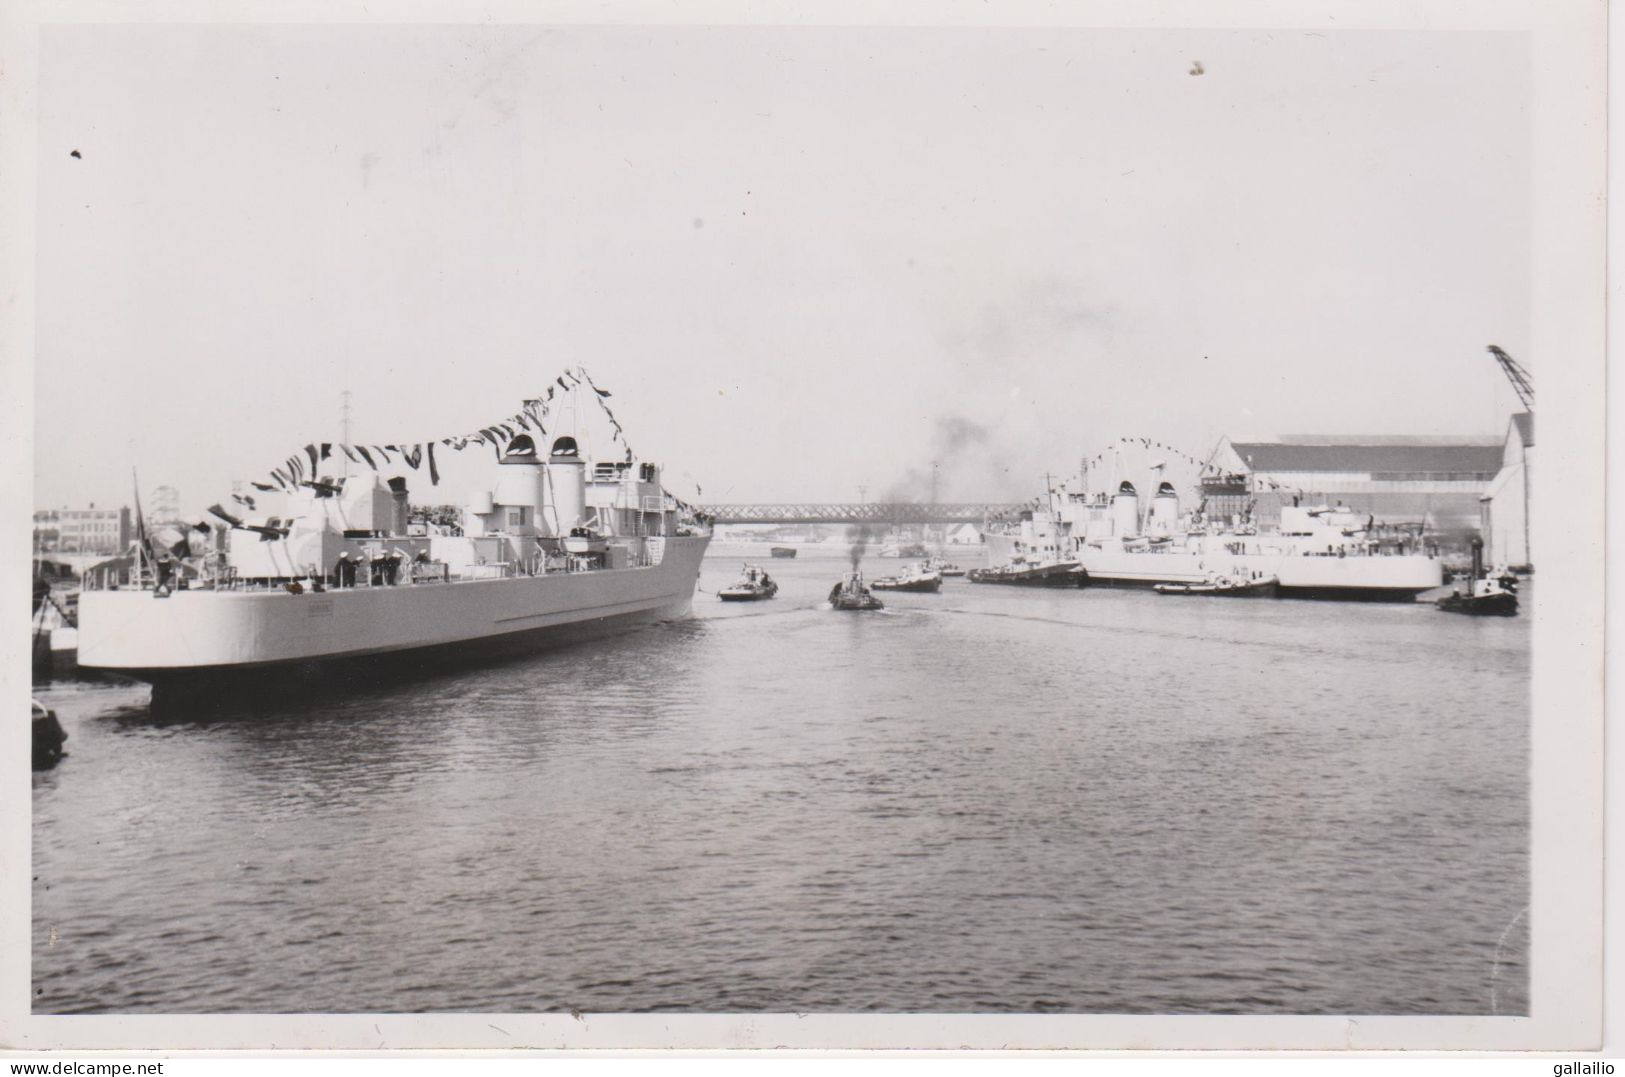 PHOTO PRESSE LES ESCORTEURS KERSAINT ET SURCOUF A LORIENT OCTOBRE 1953 FORMAT 13 X 18 CMS - Barche